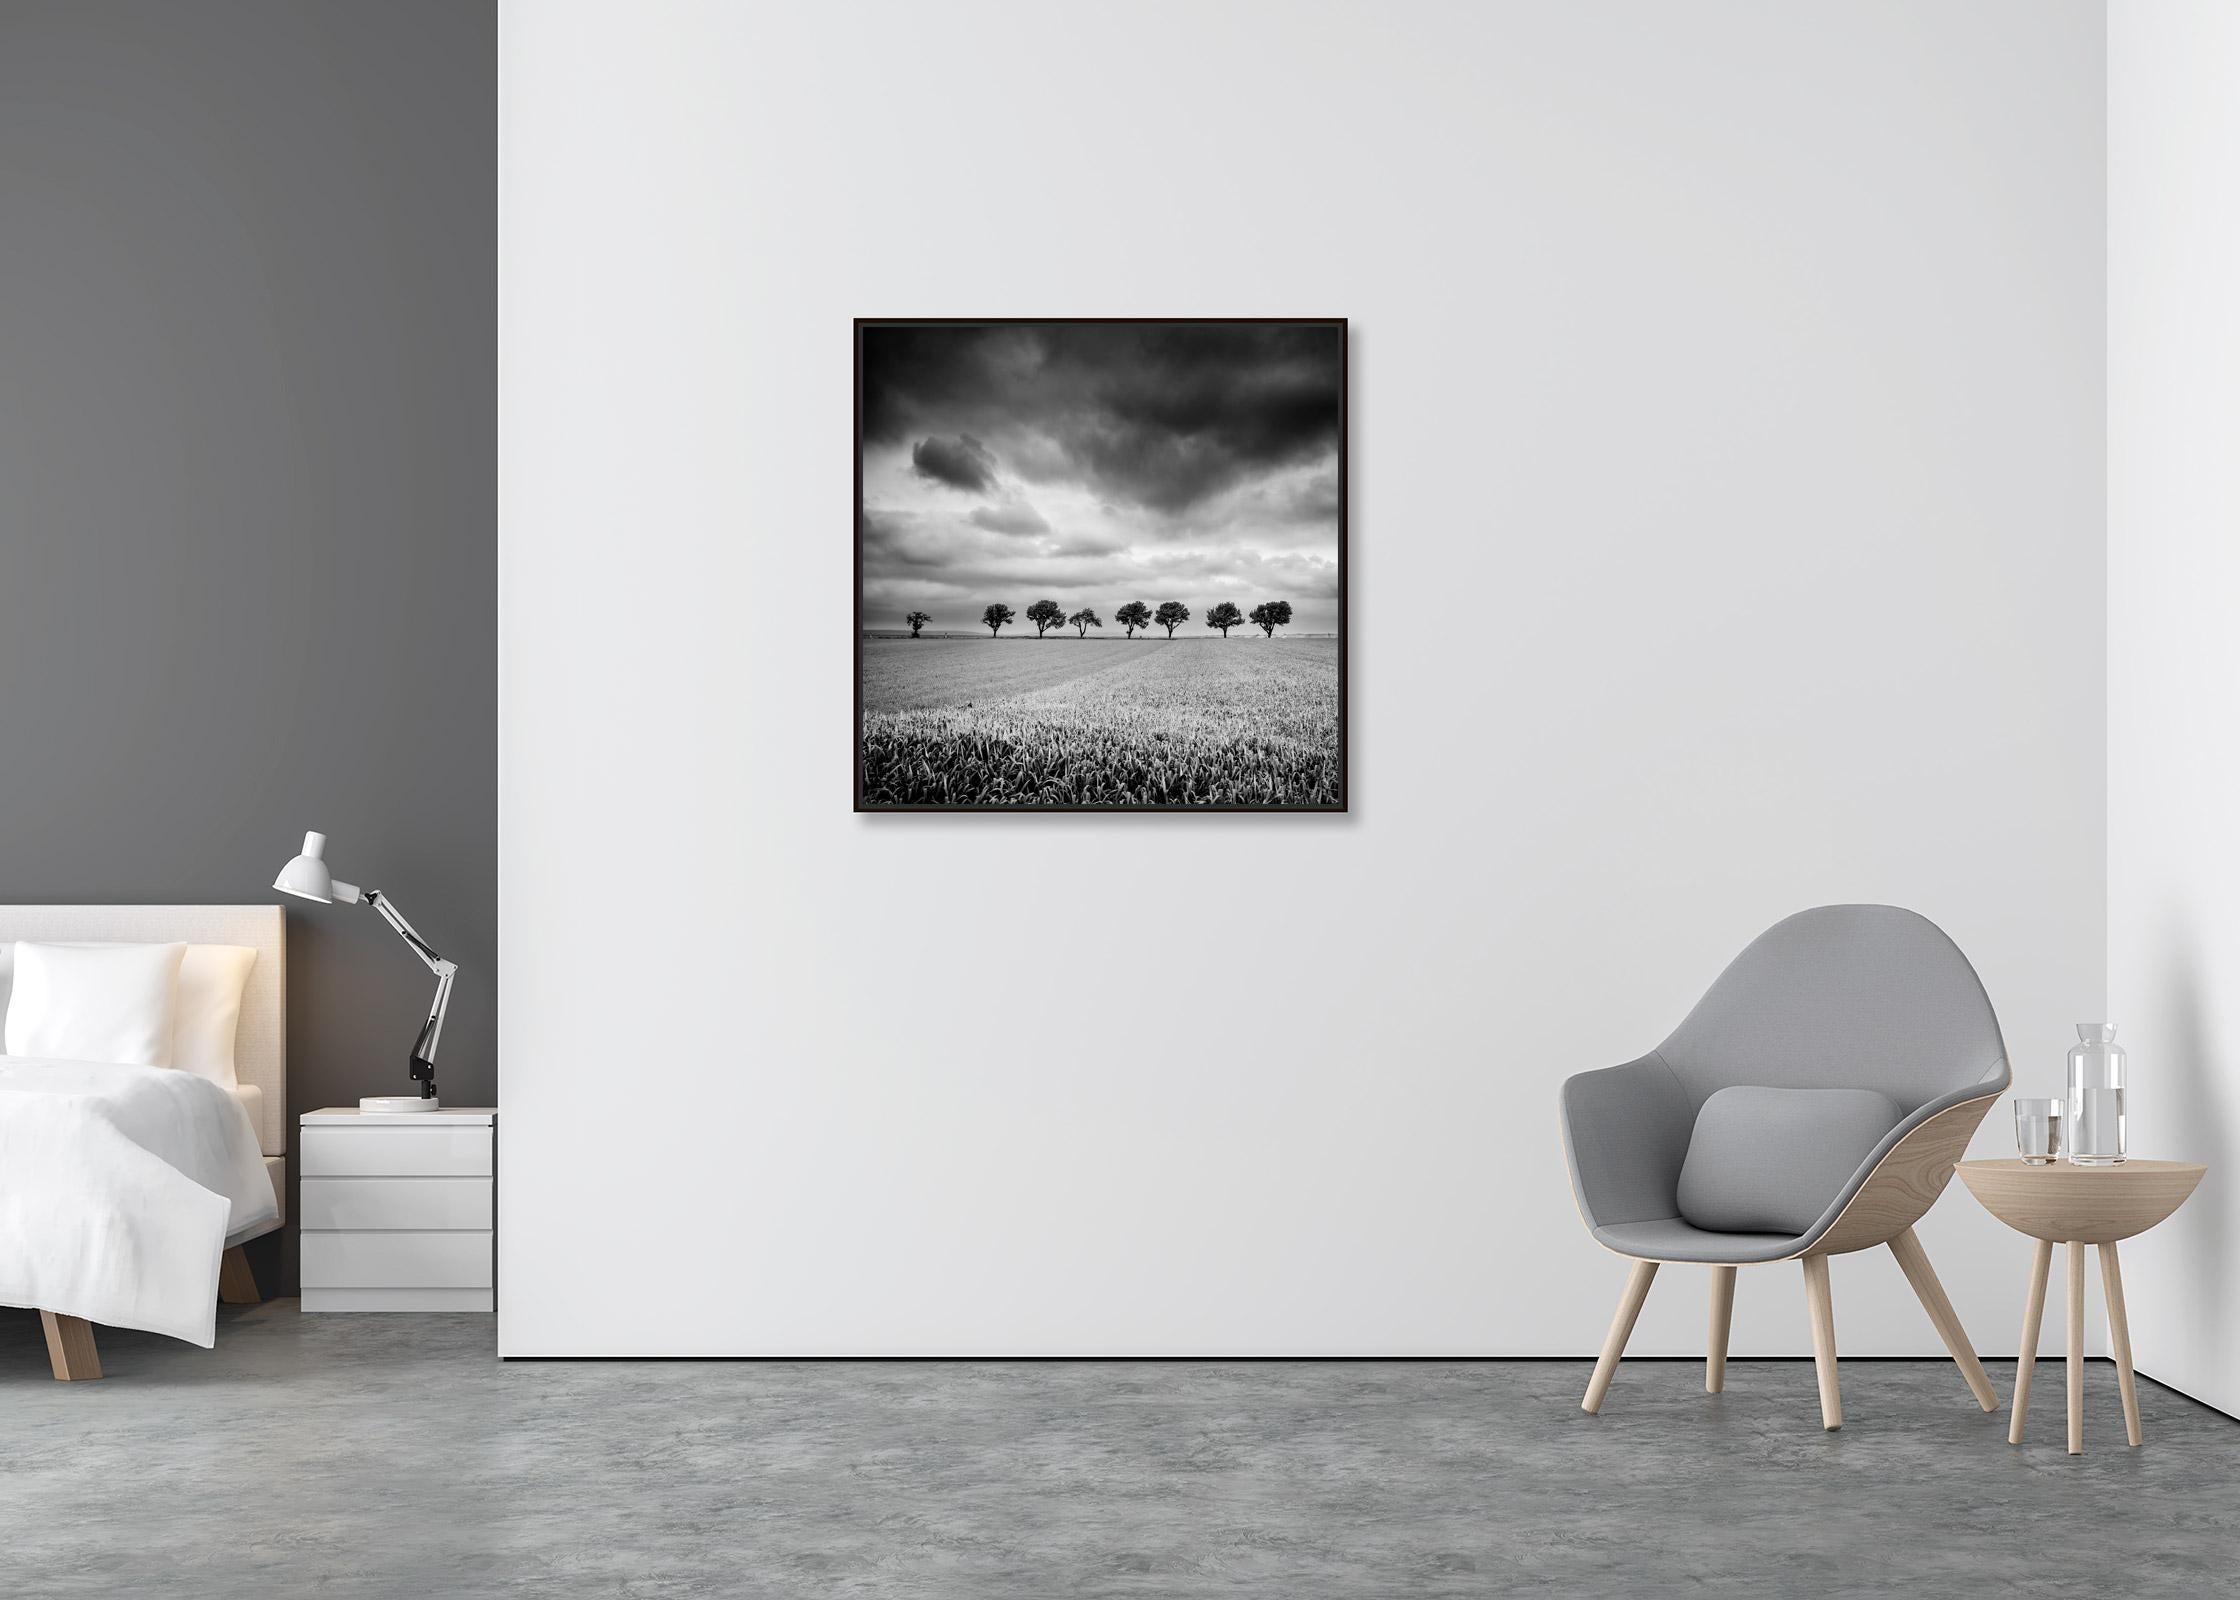 Zehn Kirschbaumbäume, stürmische Wolken, Schwarz-Weiß, Landschaft, Kunstfotografie (Zeitgenössisch), Print, von Gerald Berghammer